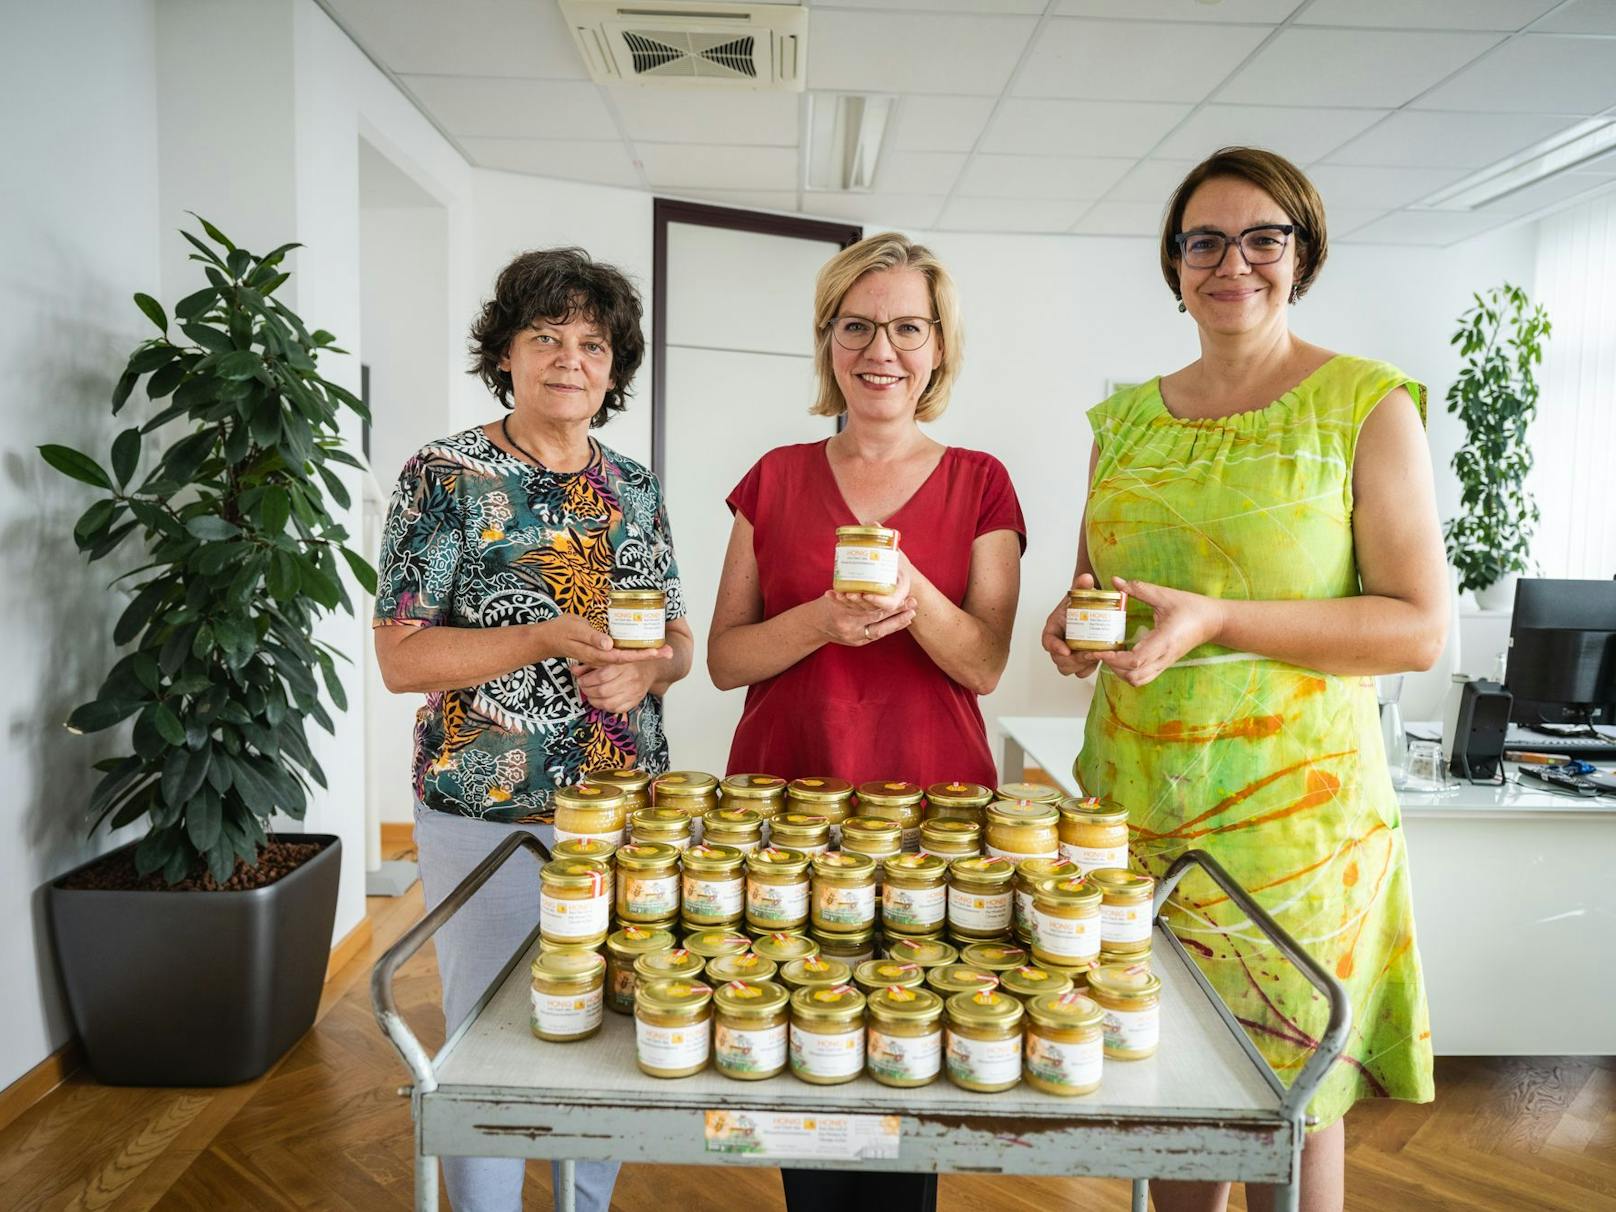 25 Kilogramm Honig konnten die beiden Imkerinnen Andrea Höflechner-Pöltl (links) und Verena Rücker (rechts) - gemeinsam im Bild mit Klimaschutzministerin Leonore Gewessler - ernten.